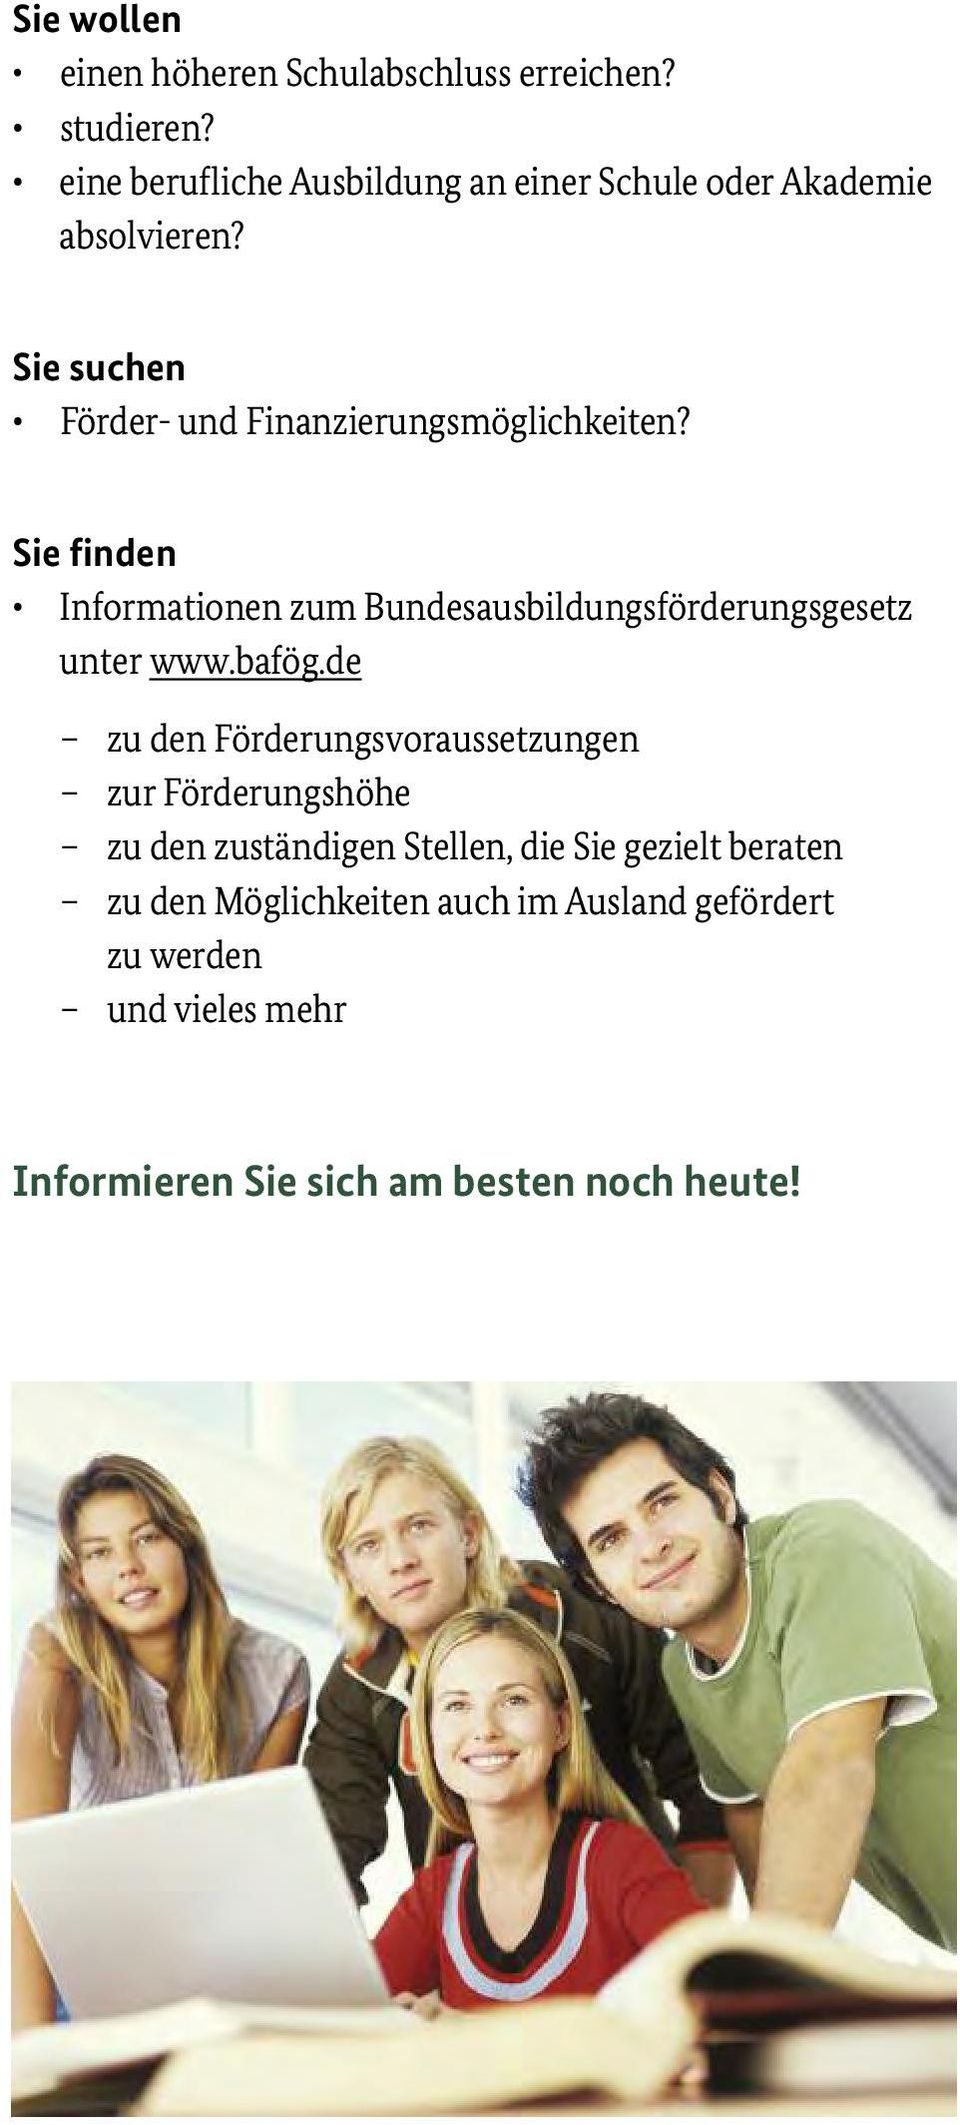 Sie finden Informationen zum Bundesausbildungsförderungsgesetz unter www.bafög.